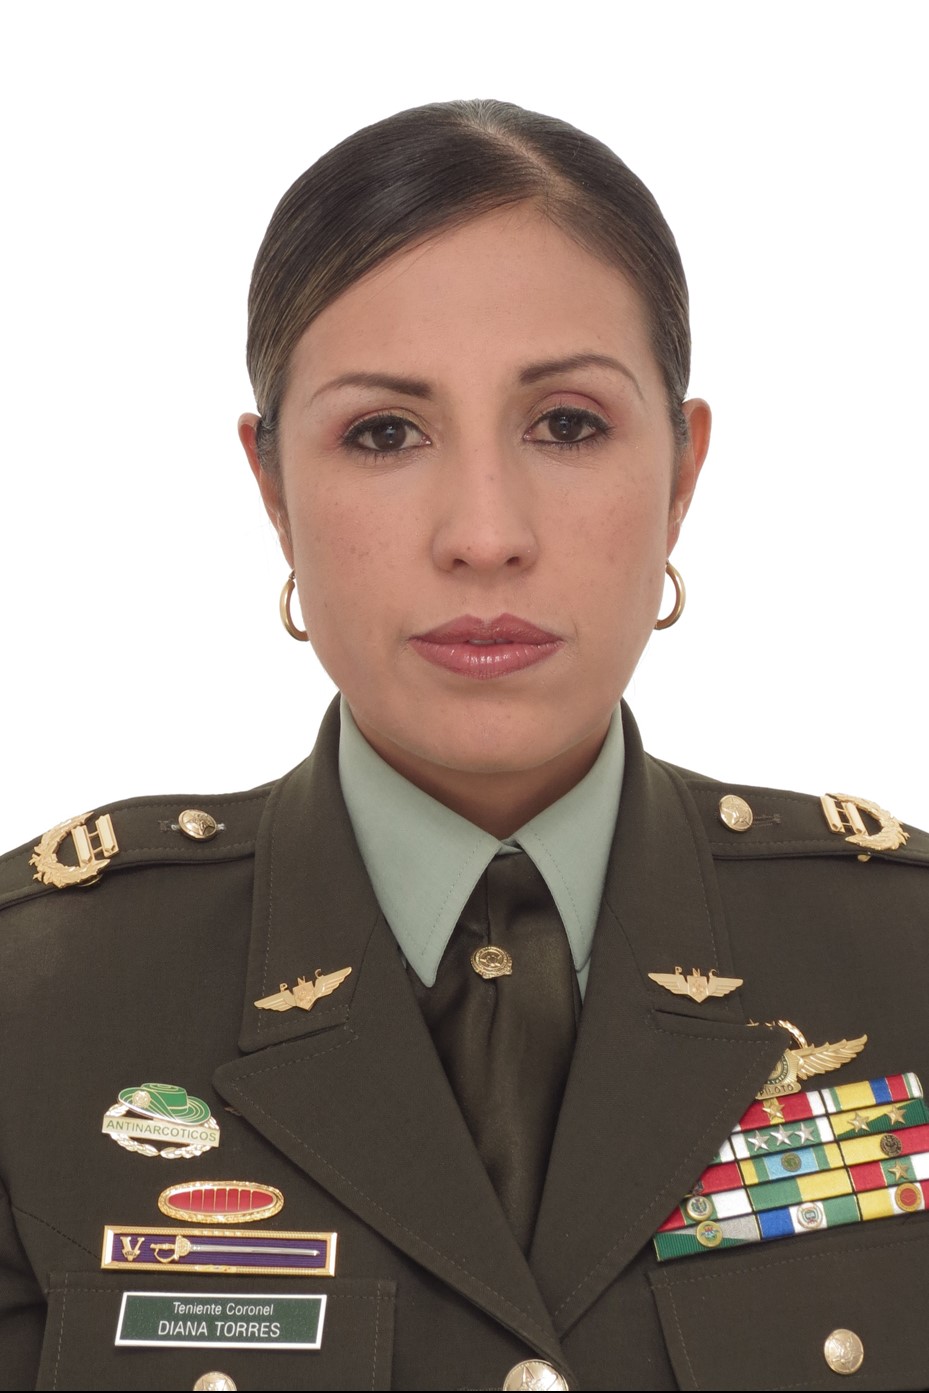 Diana Constanza Torres Castellanos